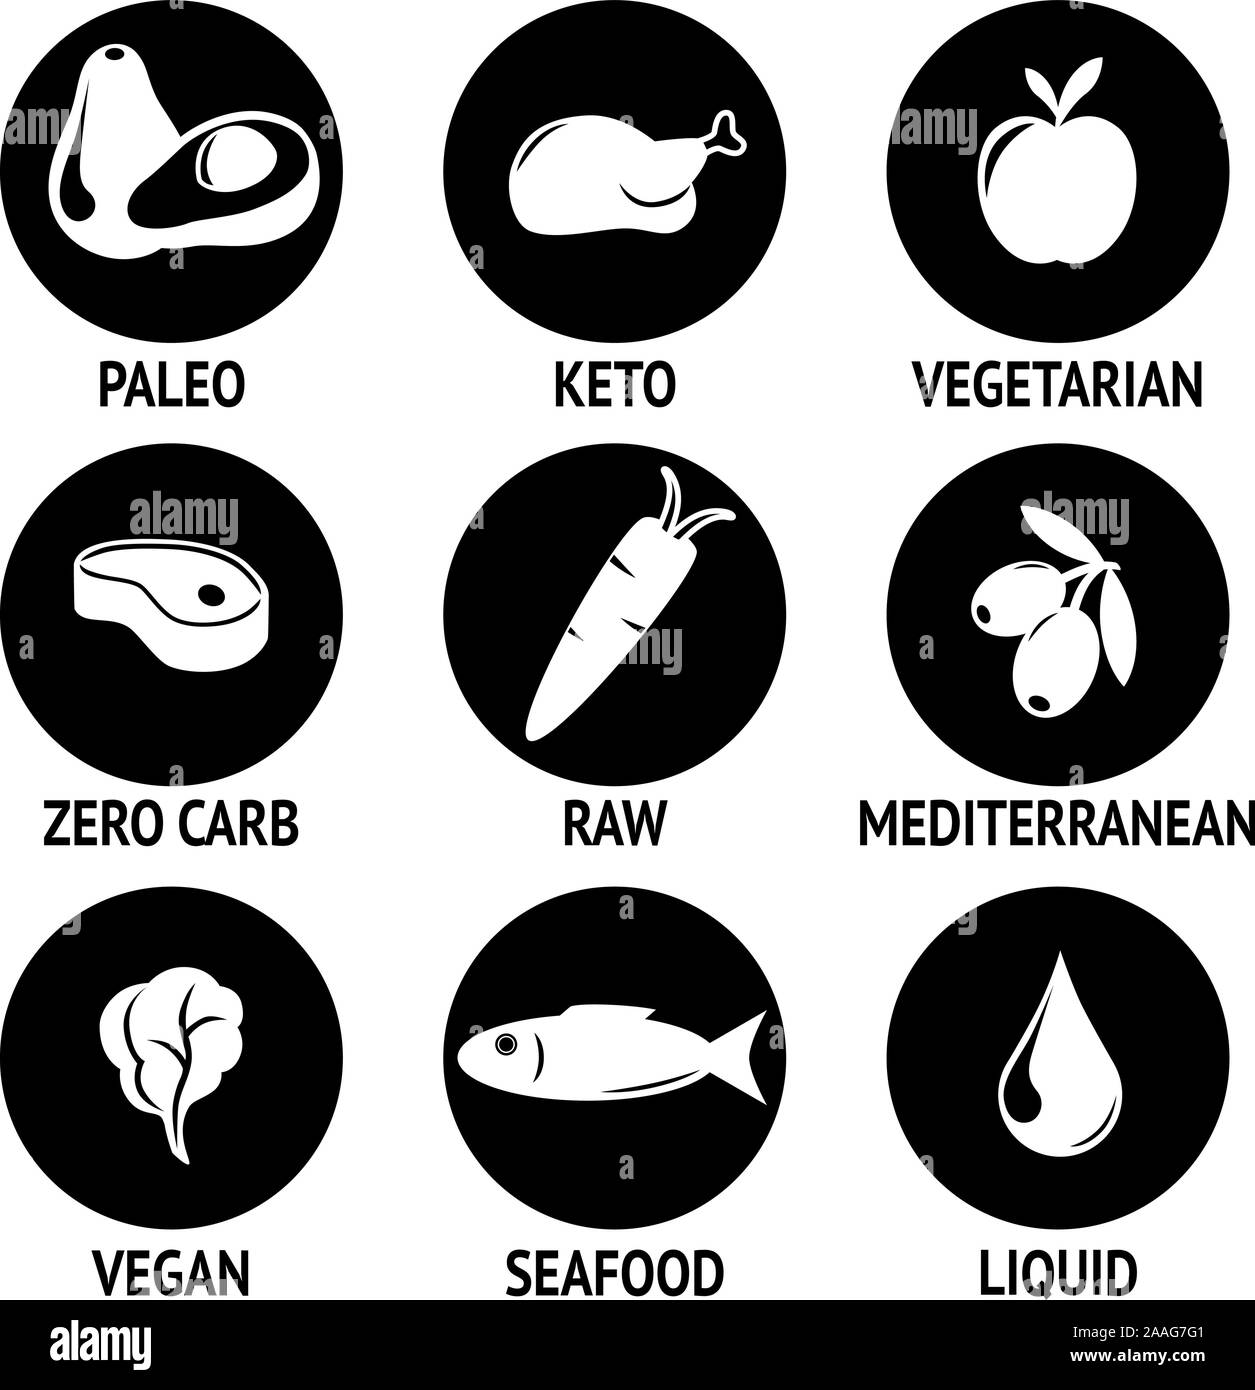 L'alimentation icon set à paleo, céto, végétarien et végétalien régimes alimentaires brutes regroupés Illustration de Vecteur